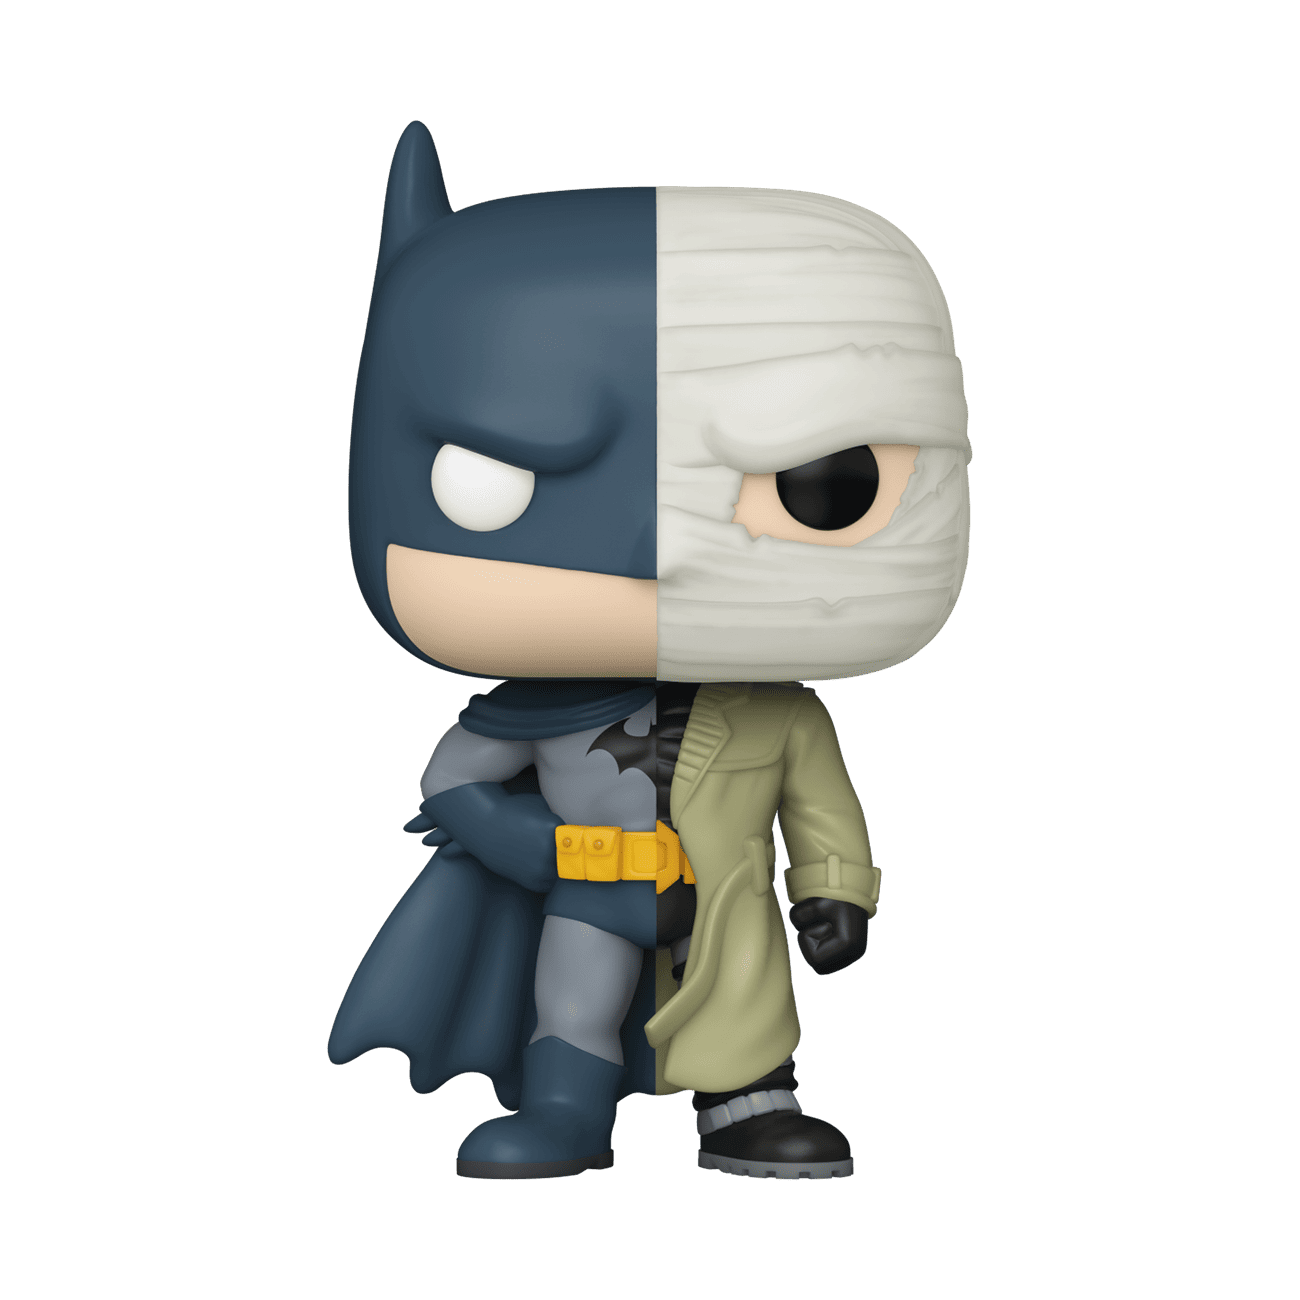 Buy Pop! Batman (Hush) at Funko.